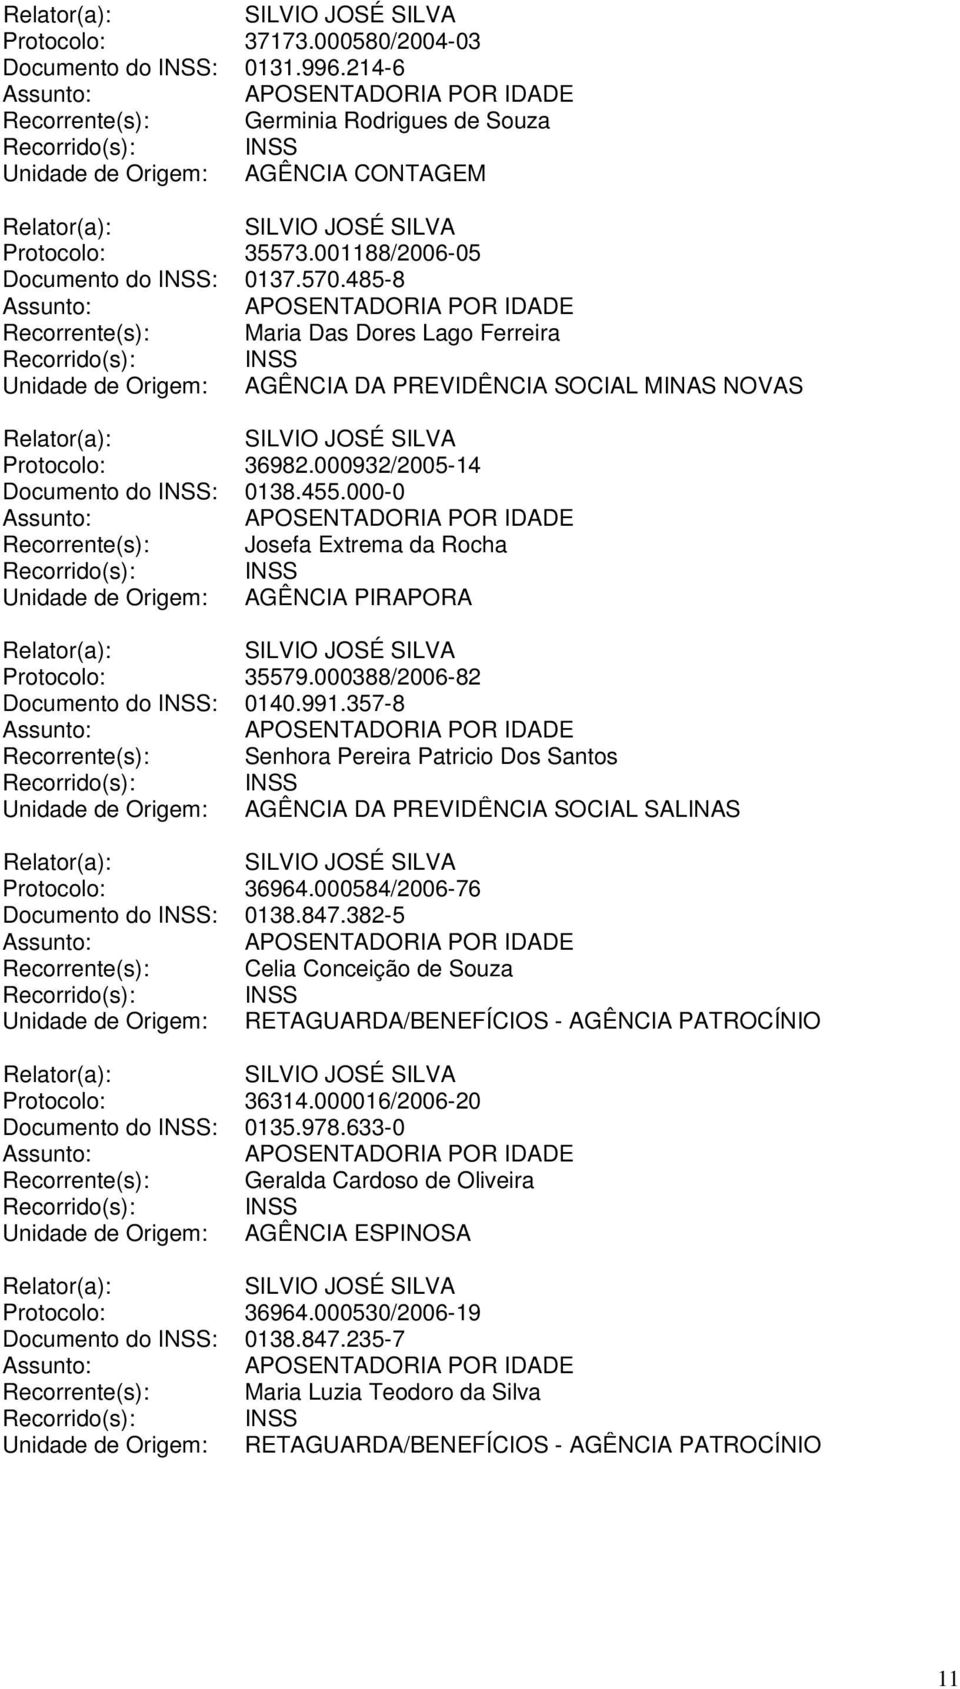 000932/2005-14 Documento do INSS: 0138.455.000-0 Recorrente(s): Josefa Extrema da Rocha Unidade de Origem: AGÊNCIA PIRAPORA Protocolo: 35579.000388/2006-82 Documento do INSS: 0140.991.